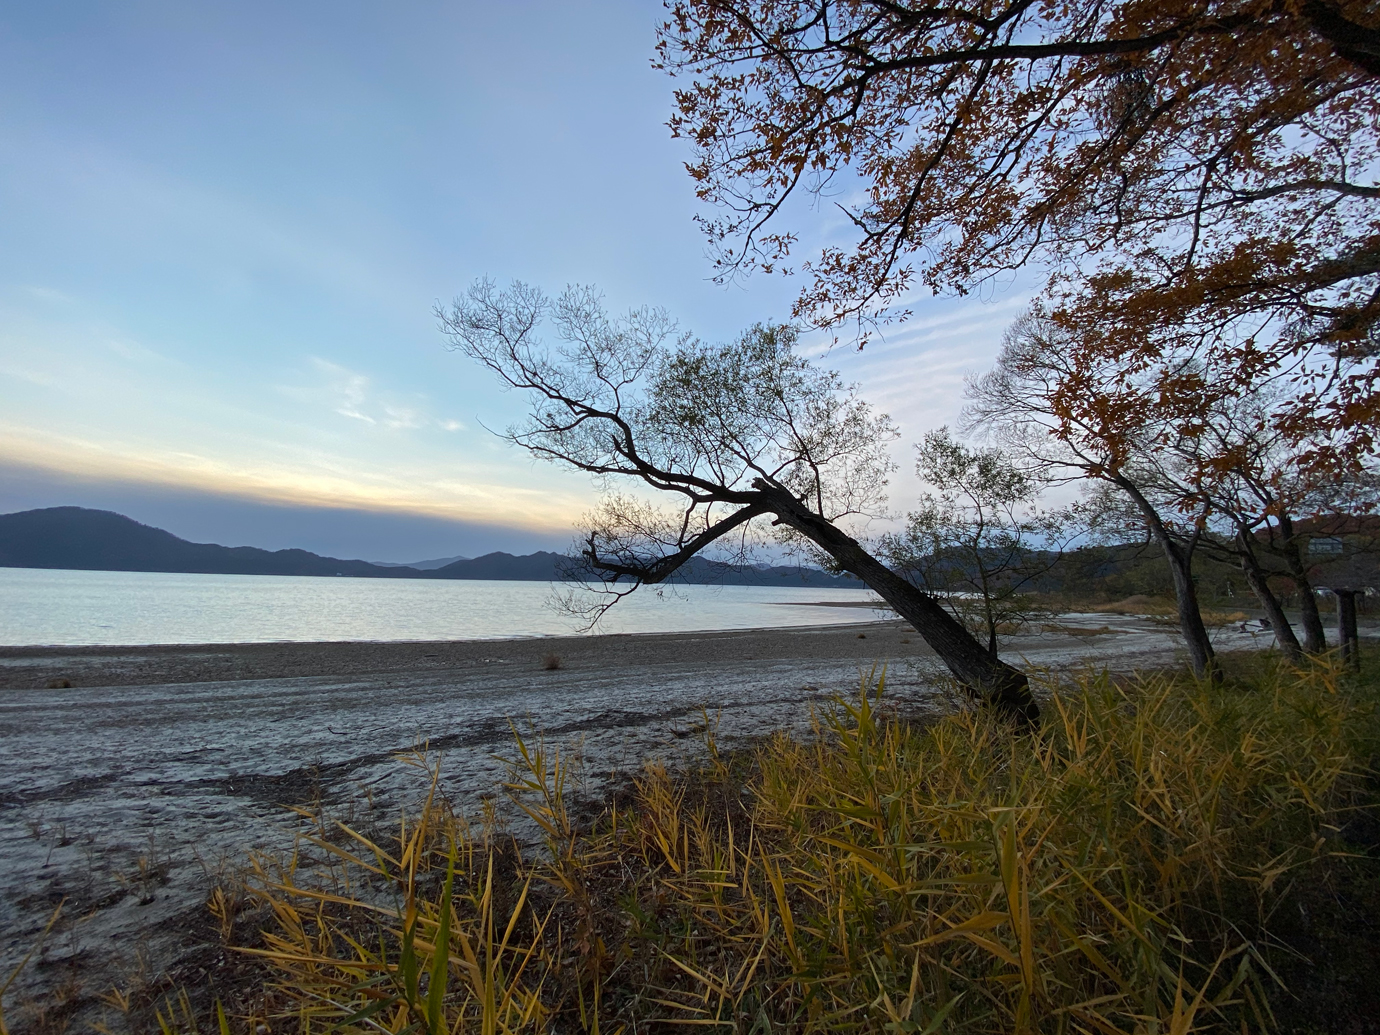 iPhone 11 Proの超広角レンズで撮影した田沢湖